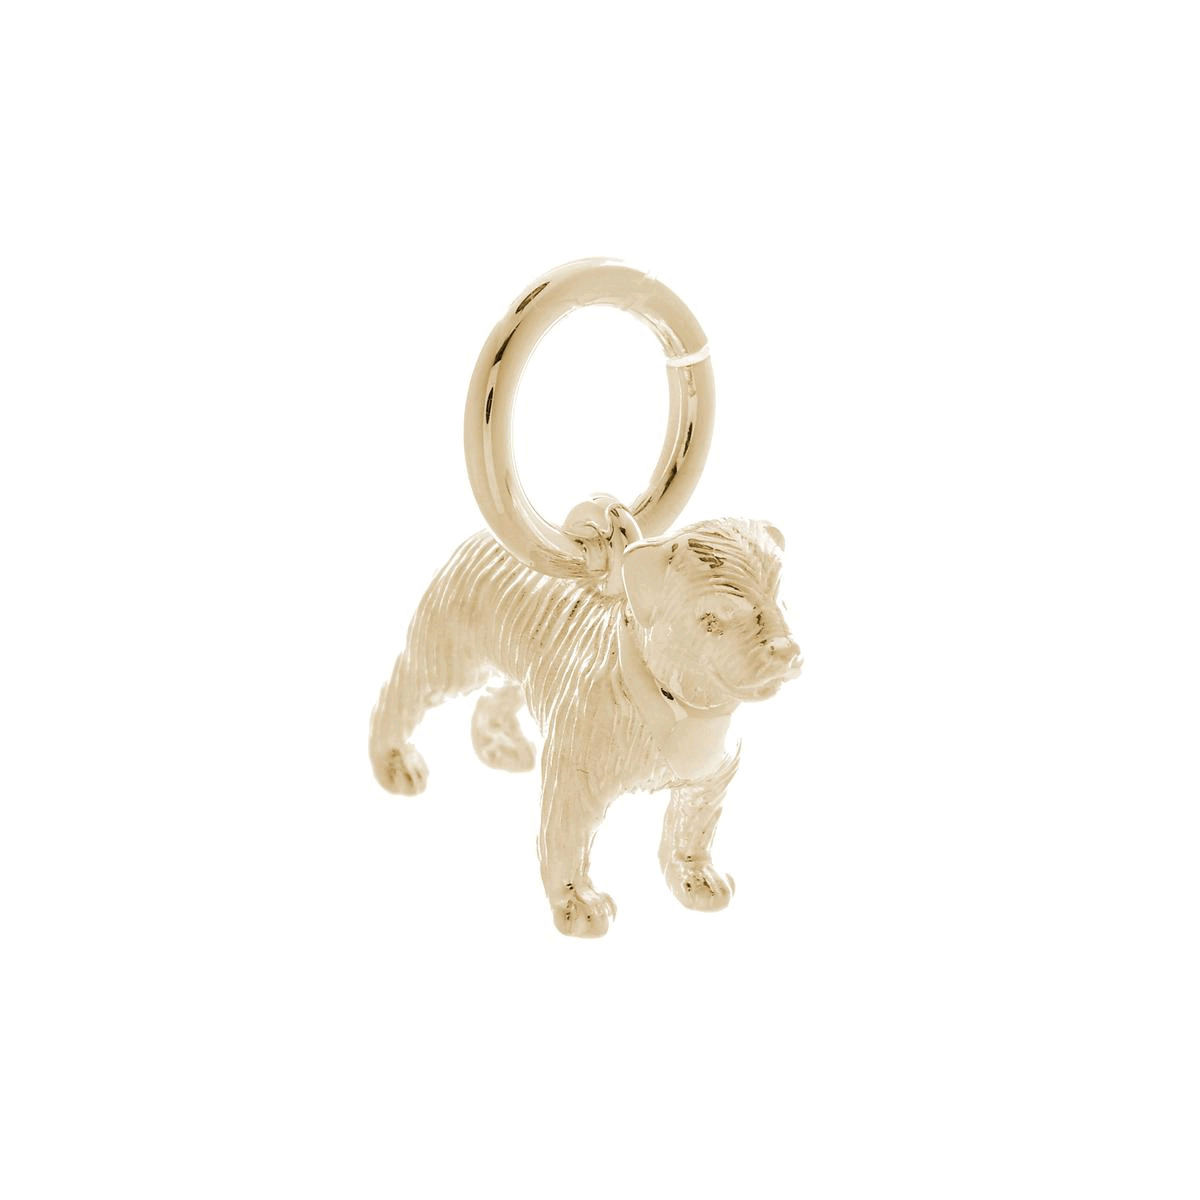 solid gold 9 carat border terrier dog charm for bracelet or necklace